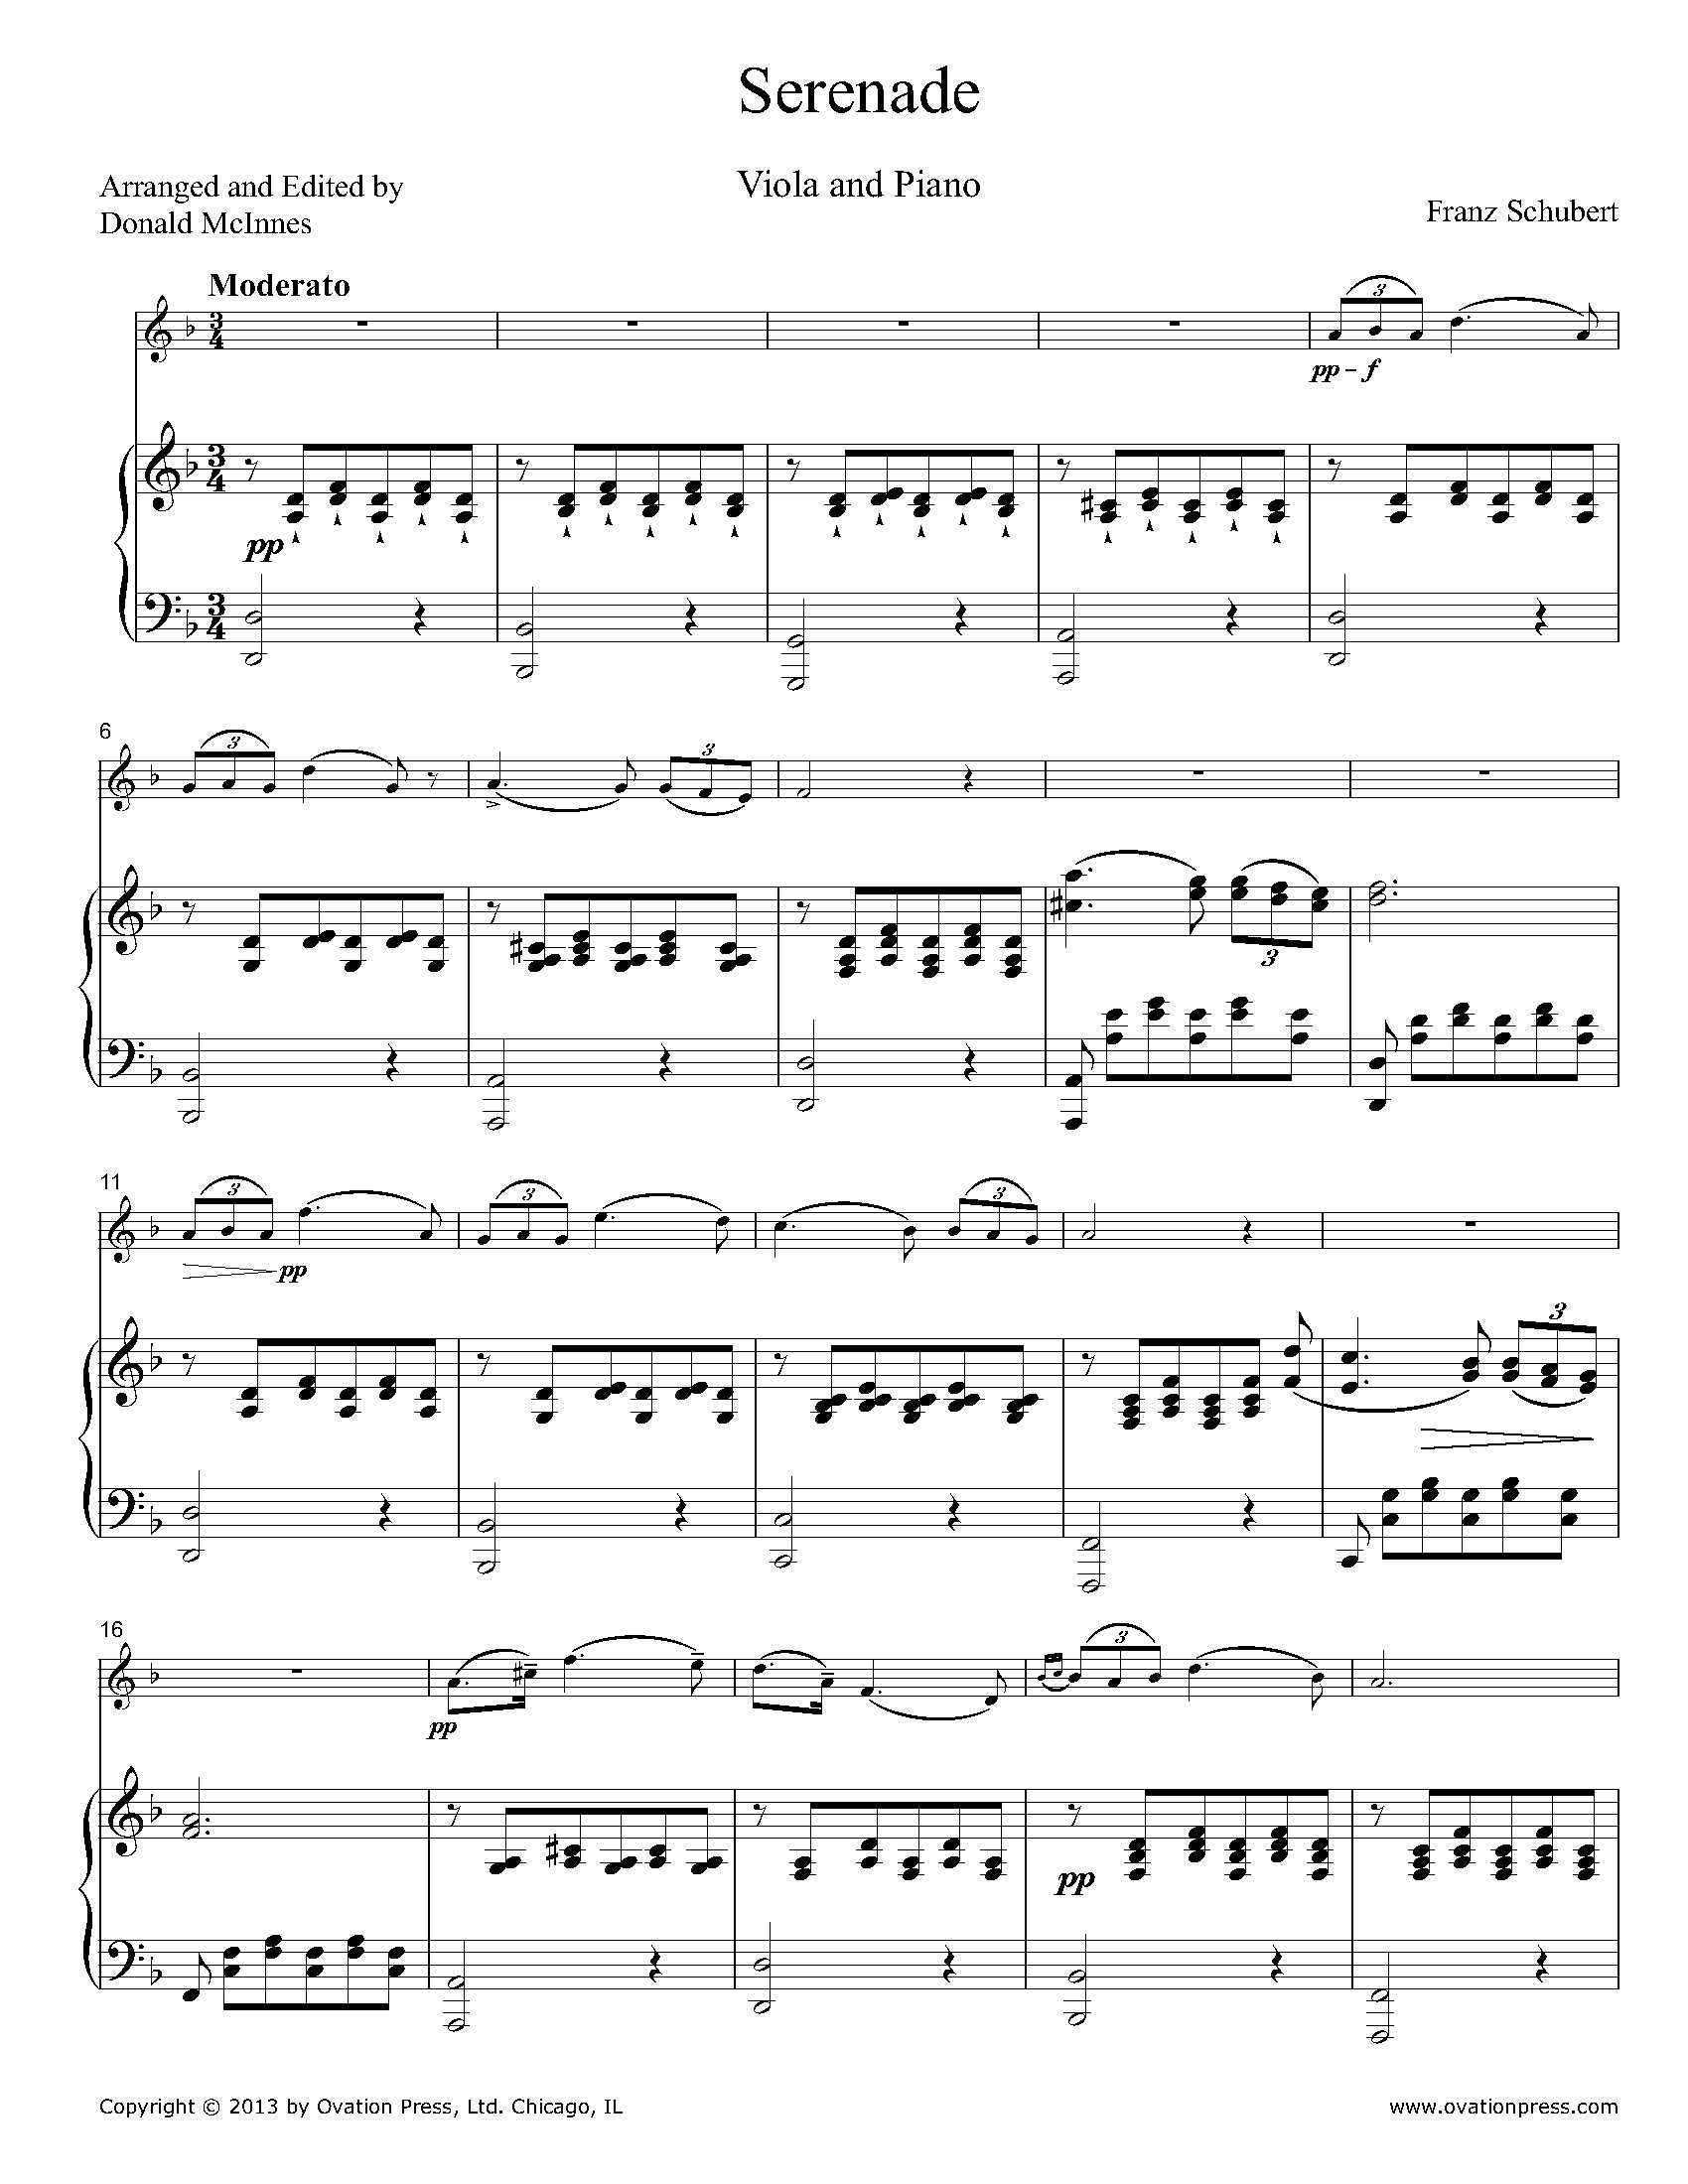 free sheet music schubert serenade